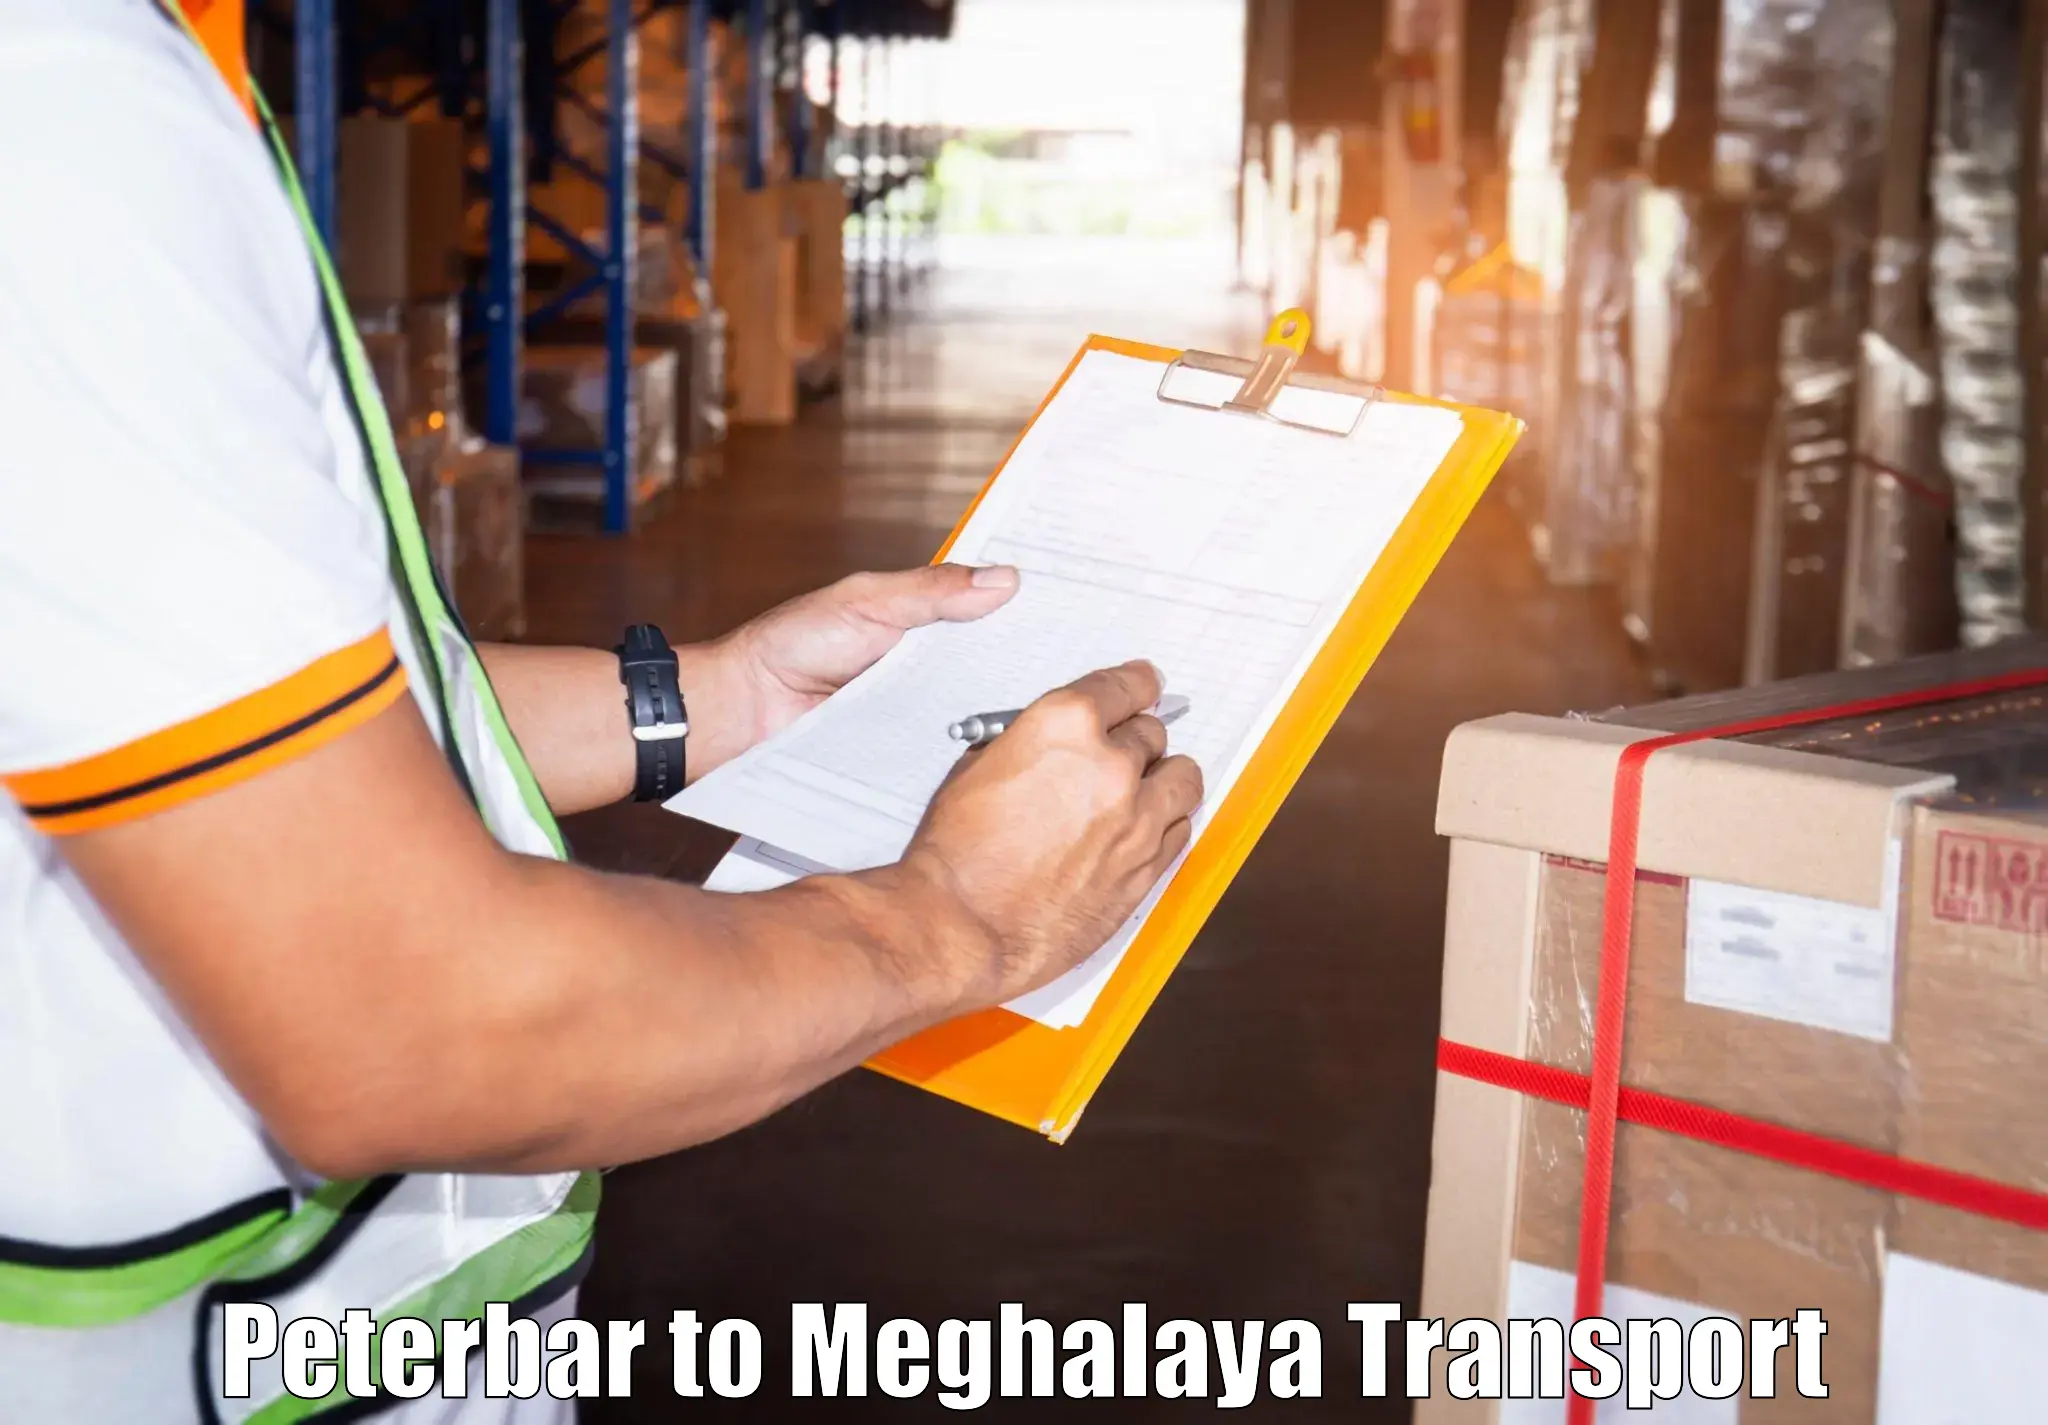 Two wheeler parcel service Peterbar to Cherrapunji